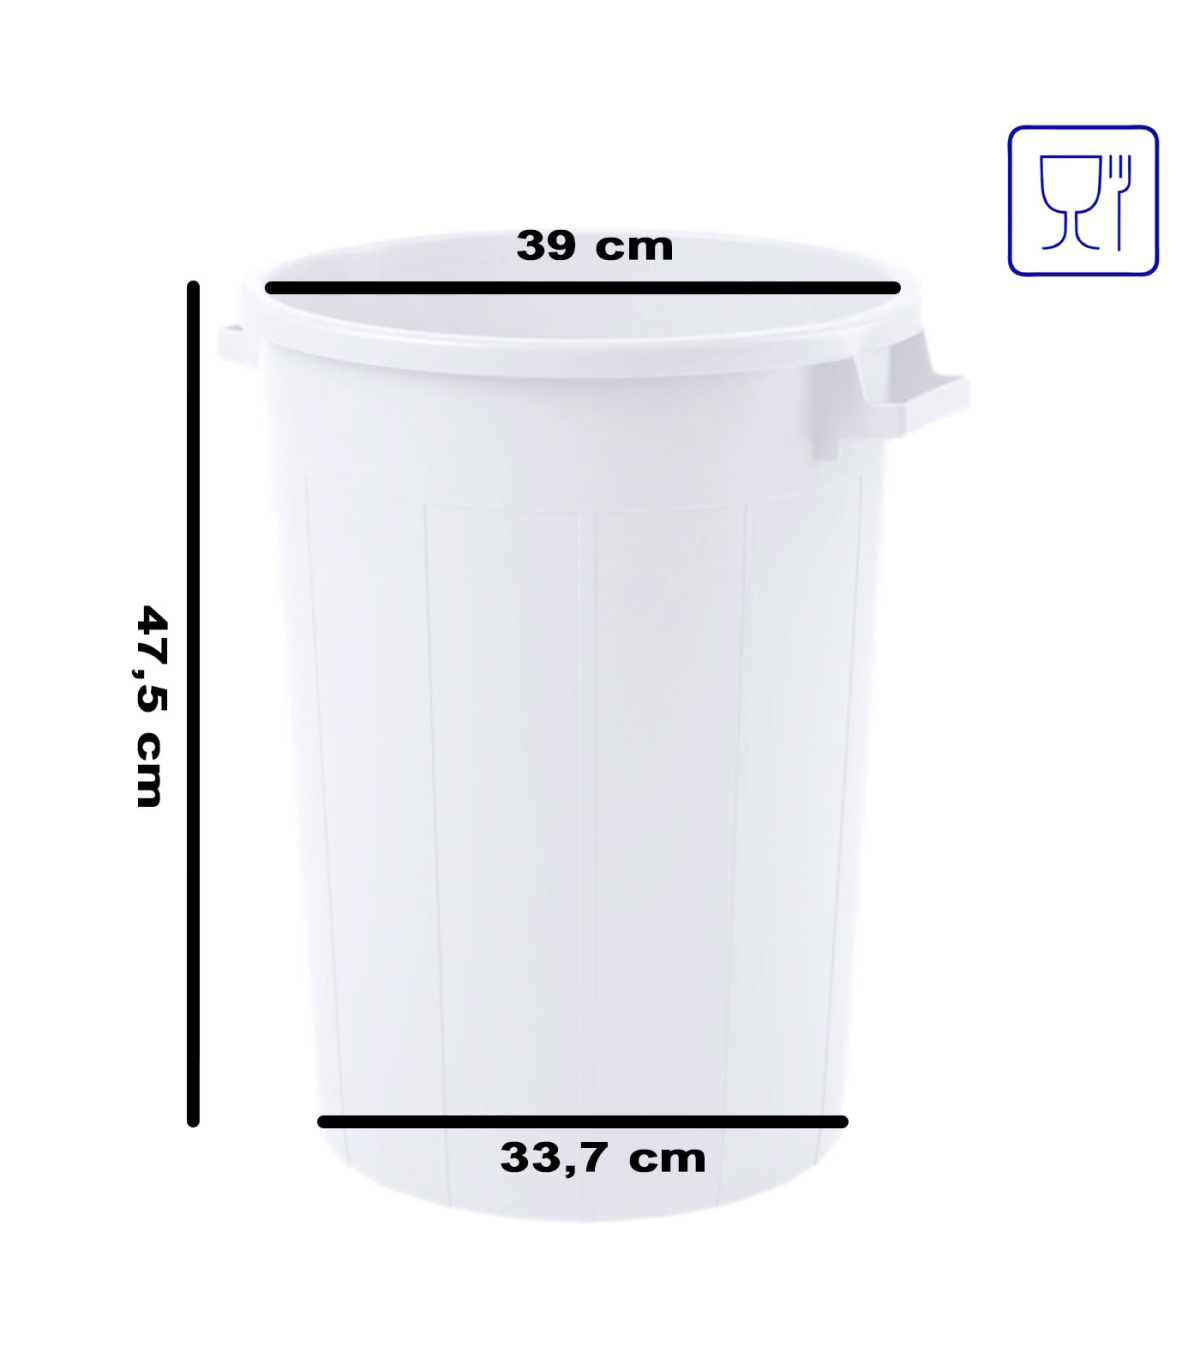 Cubo de basura de 70 litros de color blanco. Apto para uso alimentario